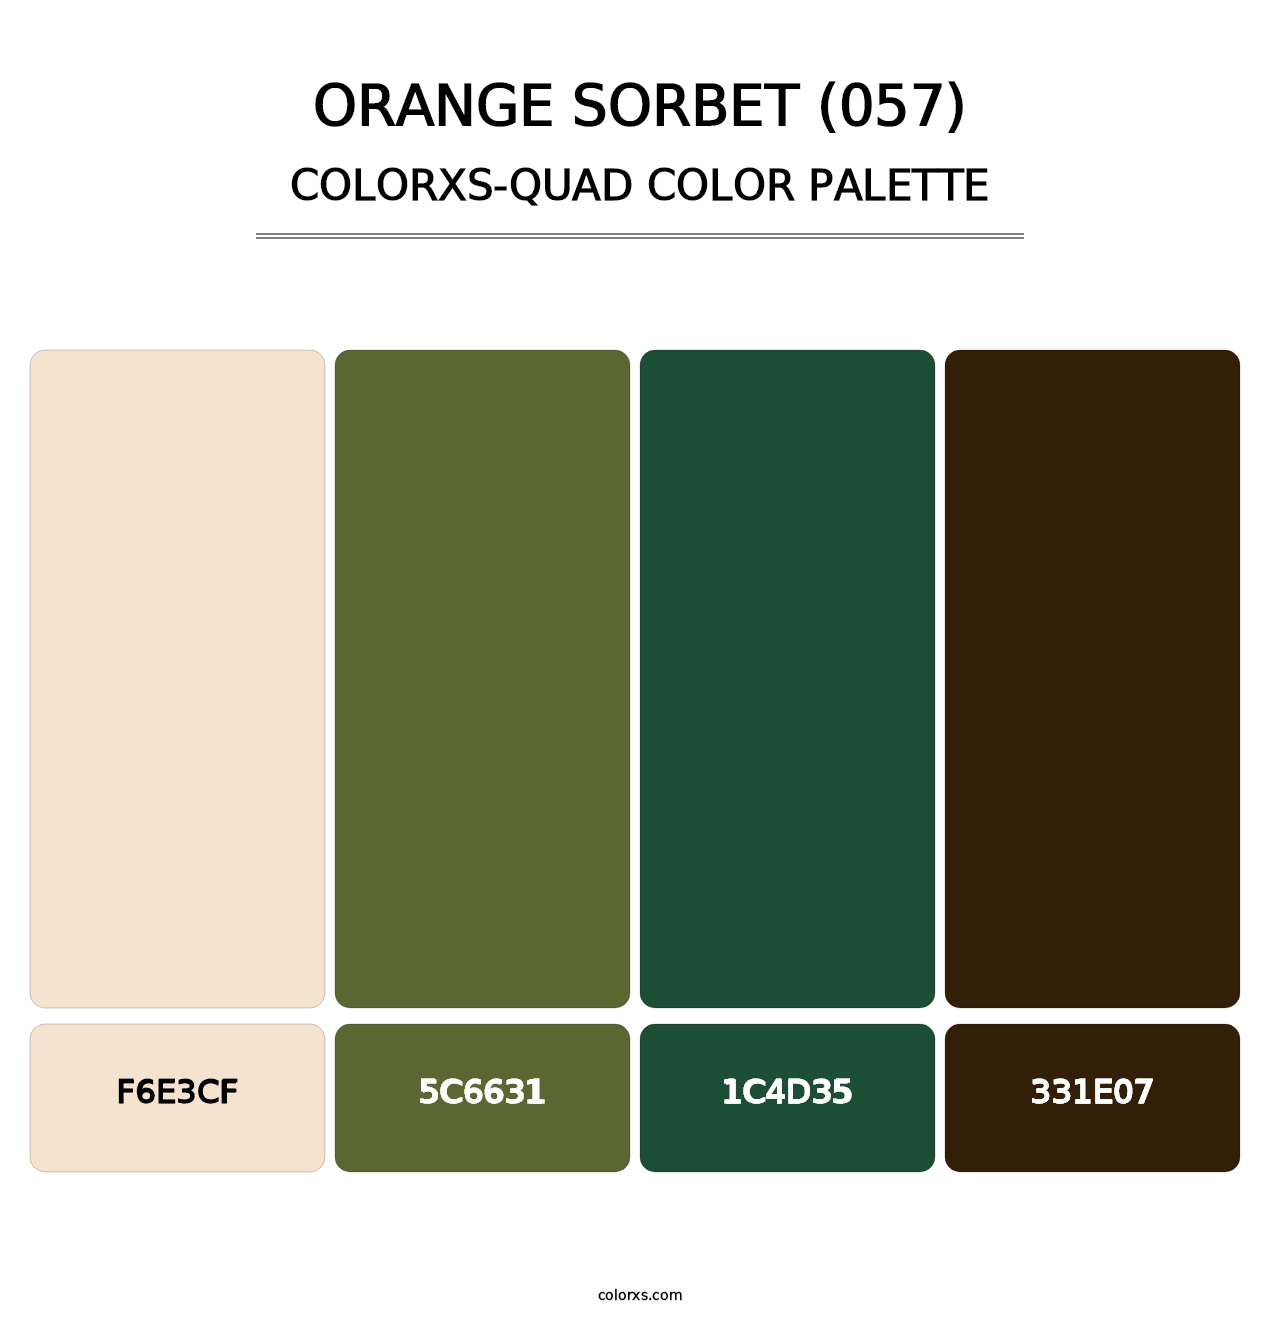 Orange Sorbet (057) - Colorxs Quad Palette